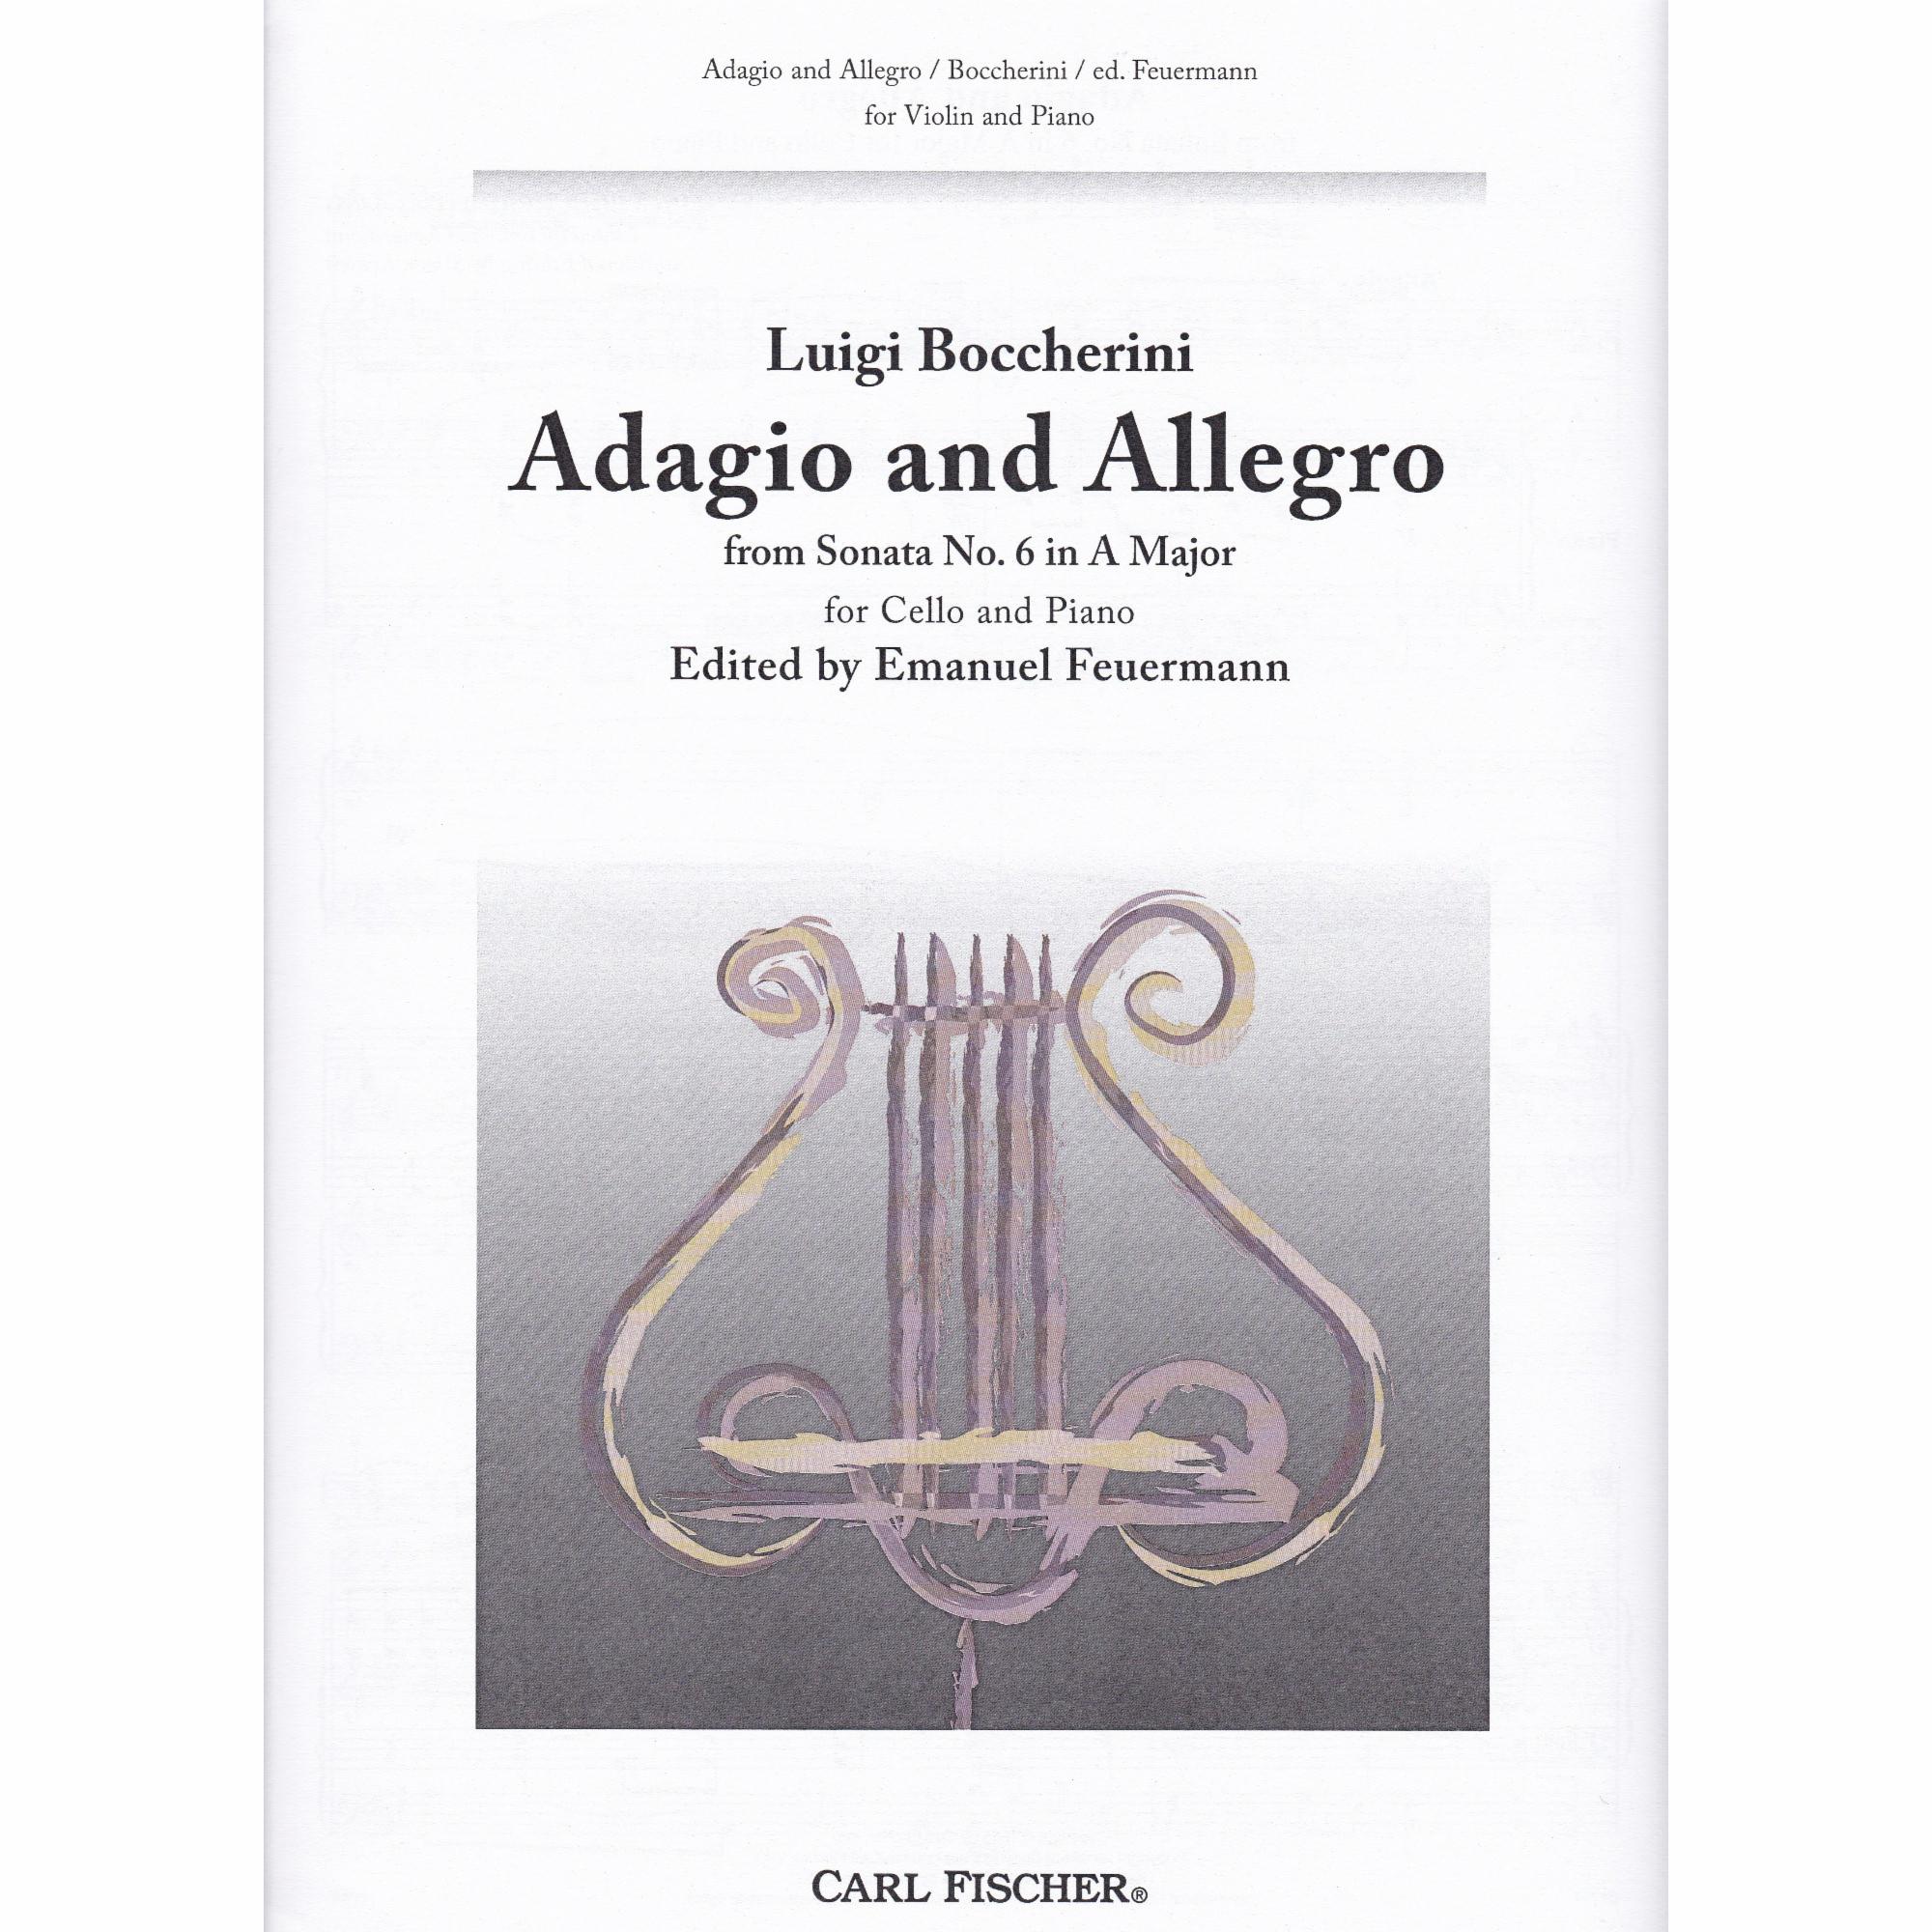 Adagio and Allegro in A Major for Cello and Piano